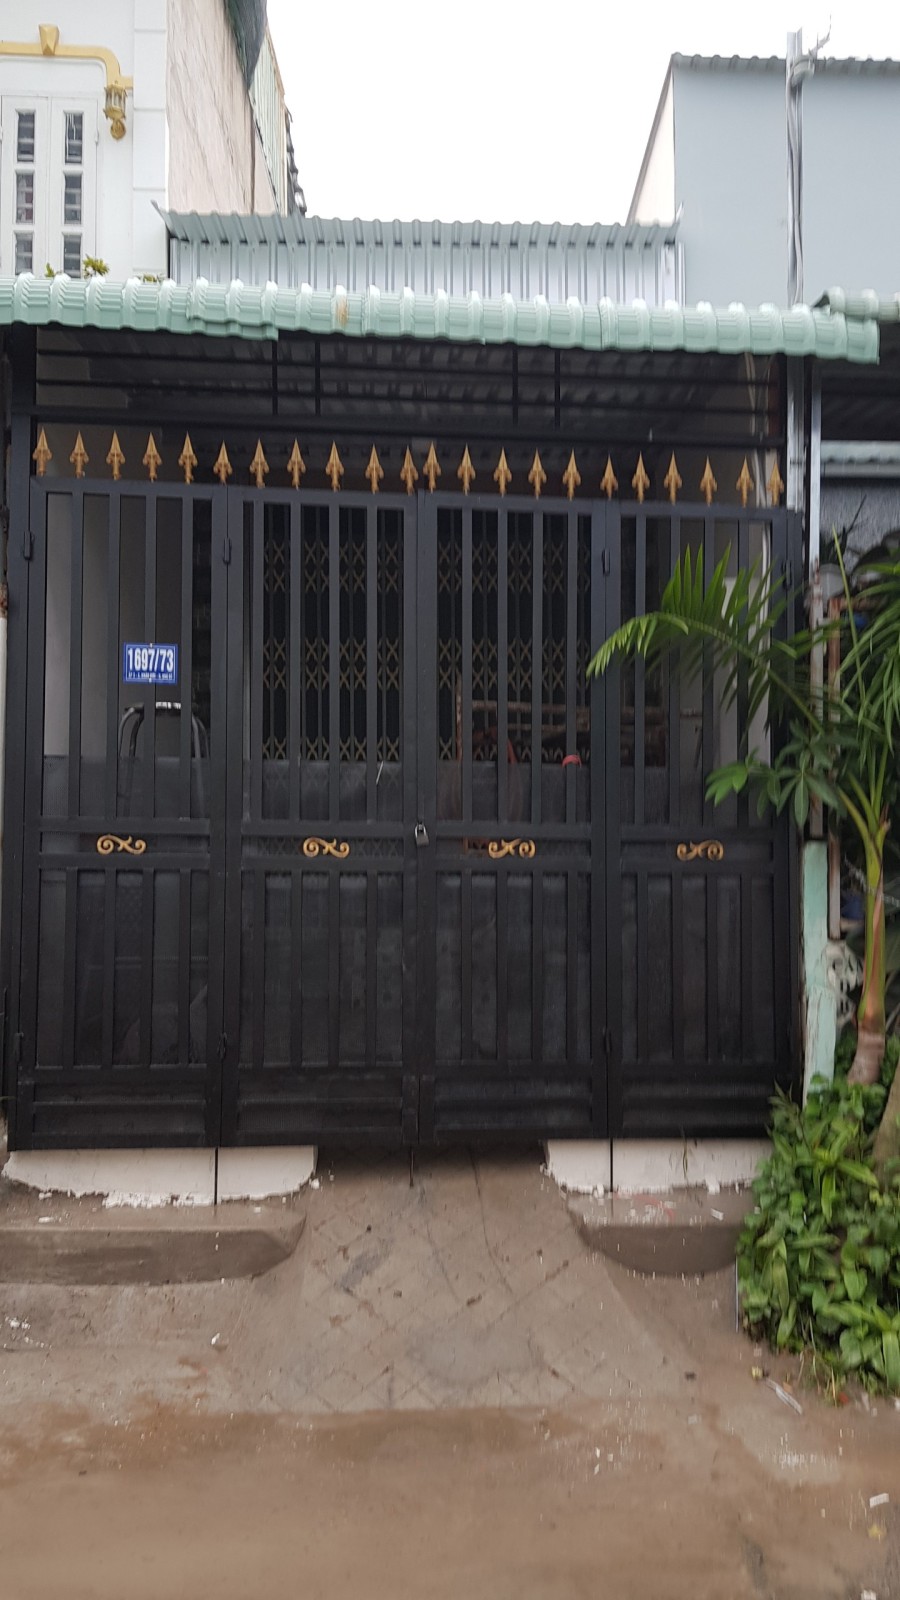 Cho thuê nhà nguyên căn số 1697/73 đường Lê Văn Lương, Xã Nhơn Đức, Nhà Bè, Hồ Chí Minh